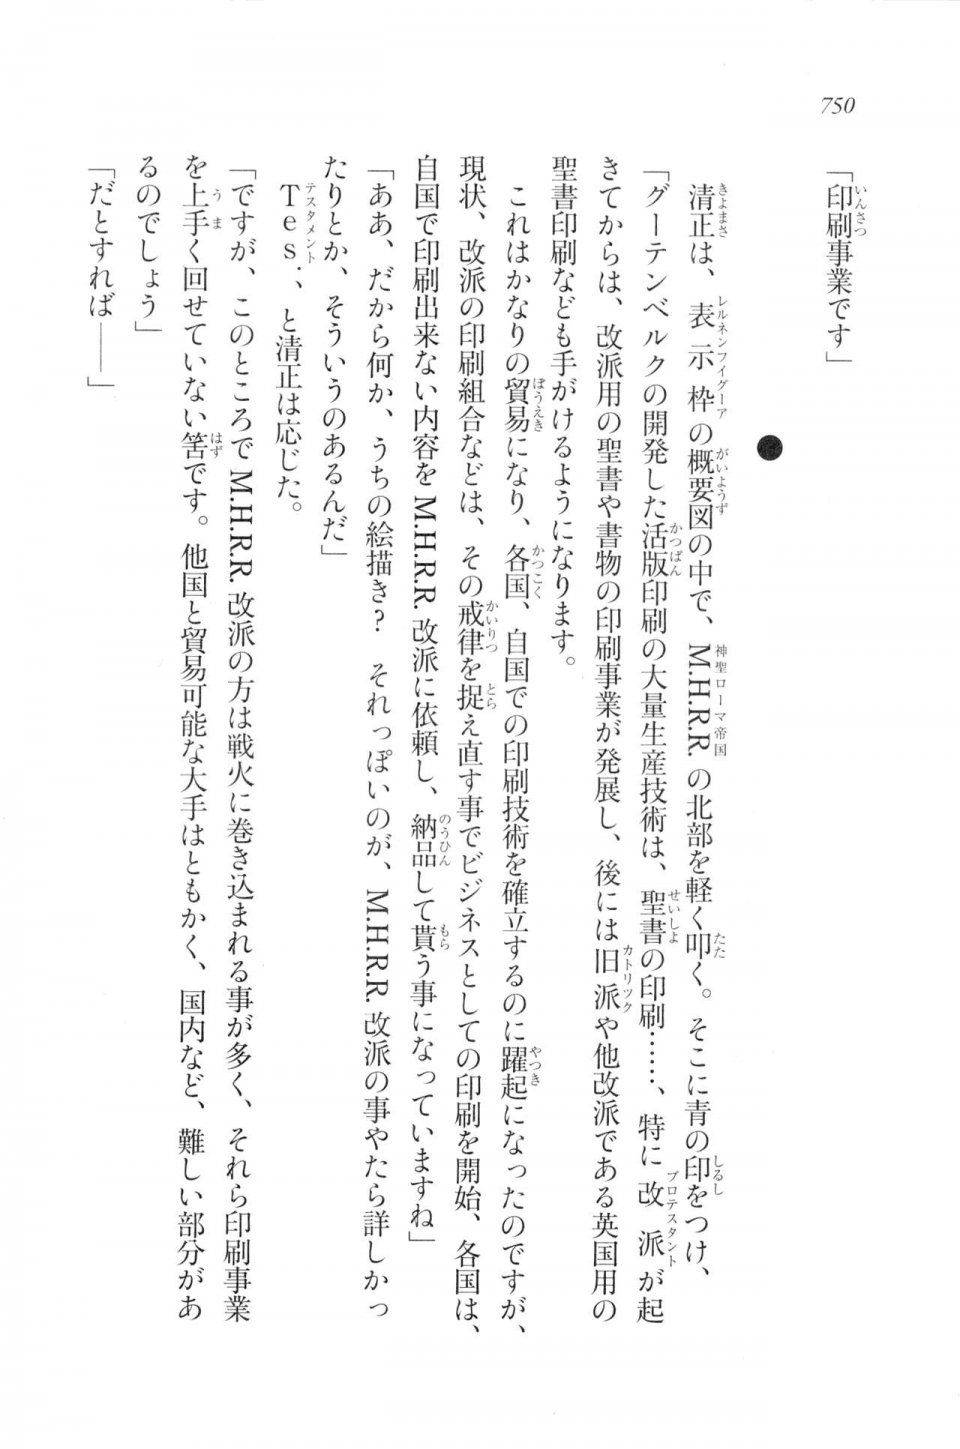 Kyoukai Senjou no Horizon LN Vol 20(8B) - Photo #750